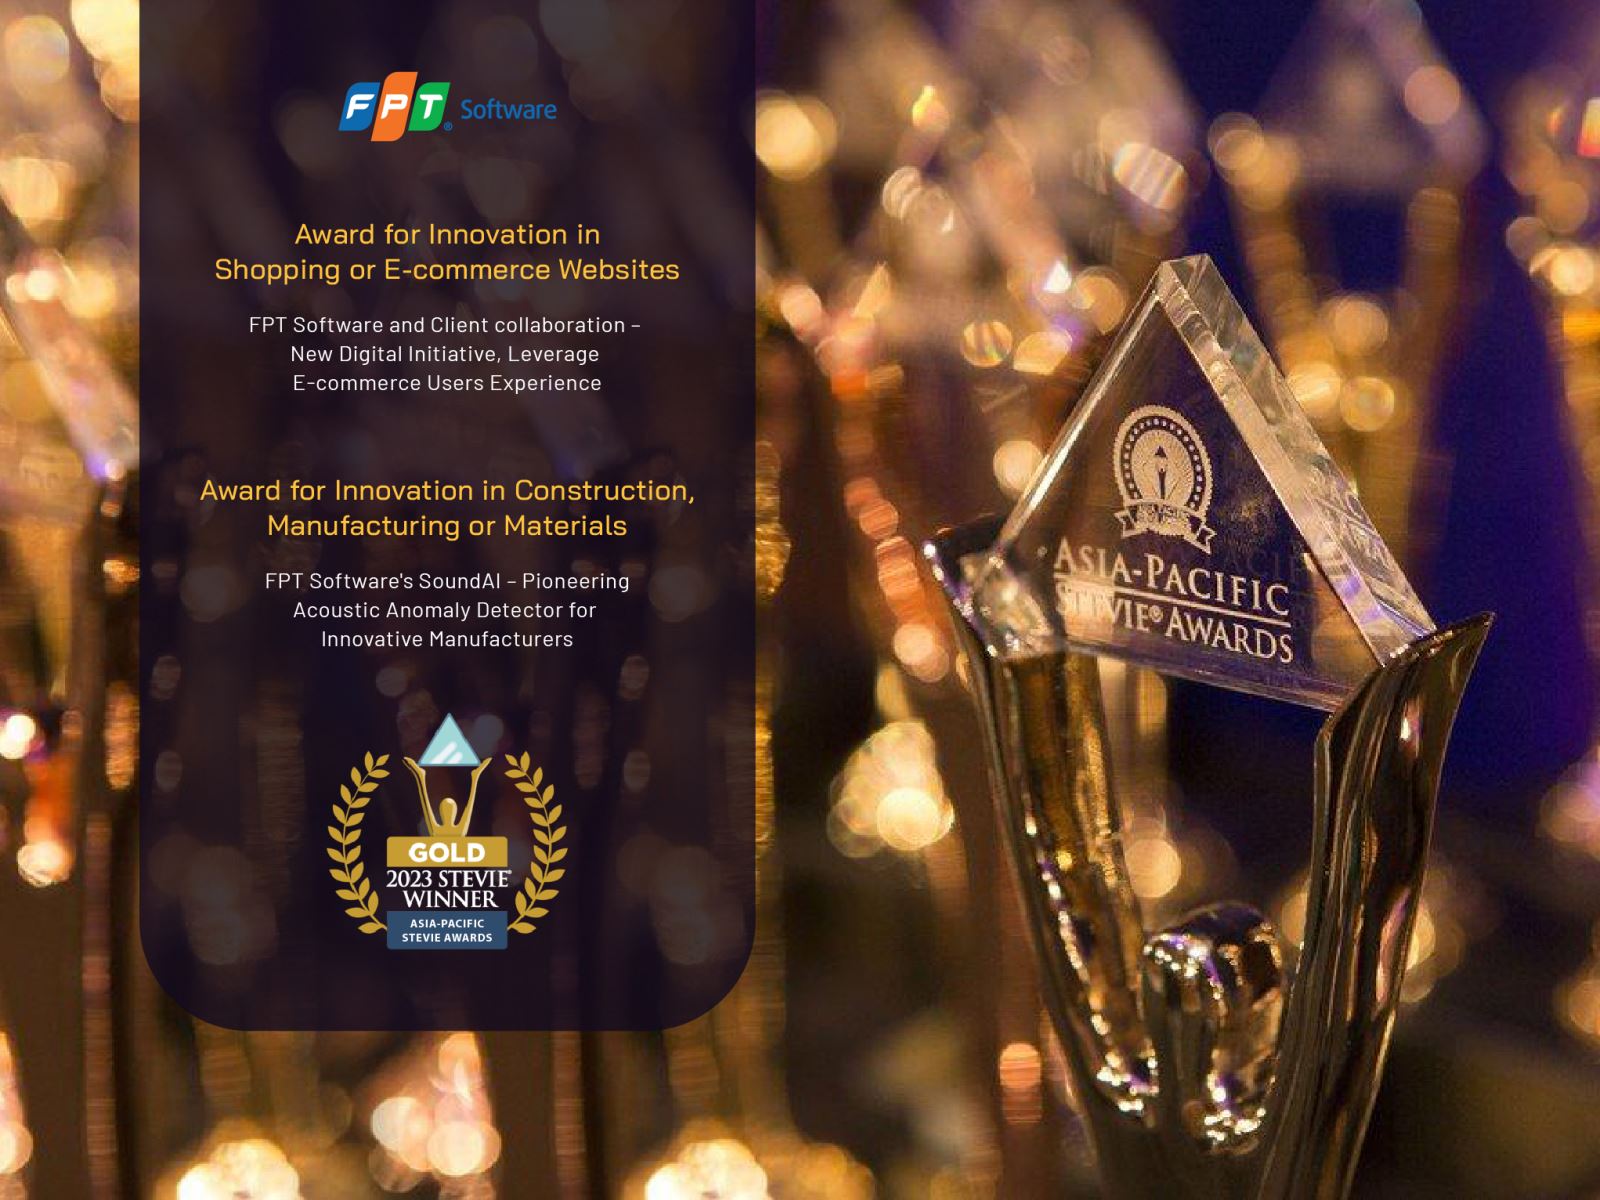 FPT là một trong số ít các công ty giành 02 giải vàng trở lên tại Asia Paciffic Stieve Awards 2023